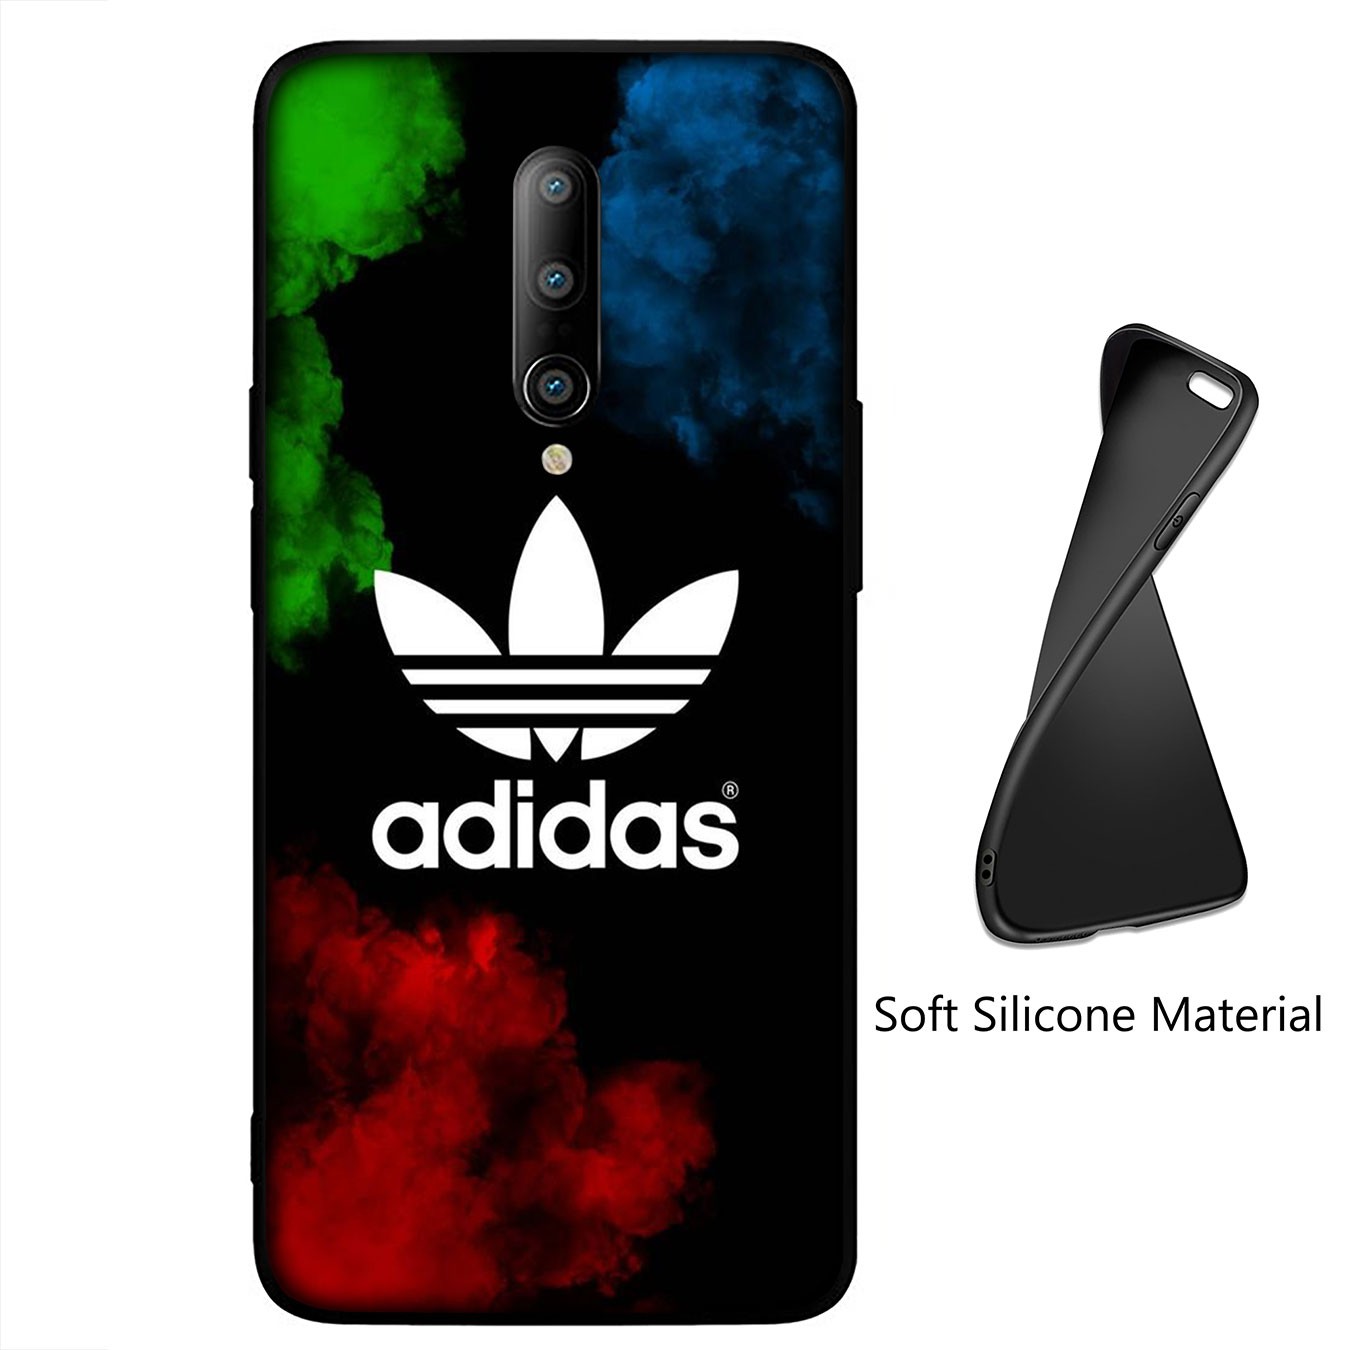 Ốp điện thoại silicon hình cỏ 3 lá adidas B27 cho Samsung Galaxy A11 A31 A10 A20 A30 A50 A10S A20S A30S A50S A71 A51